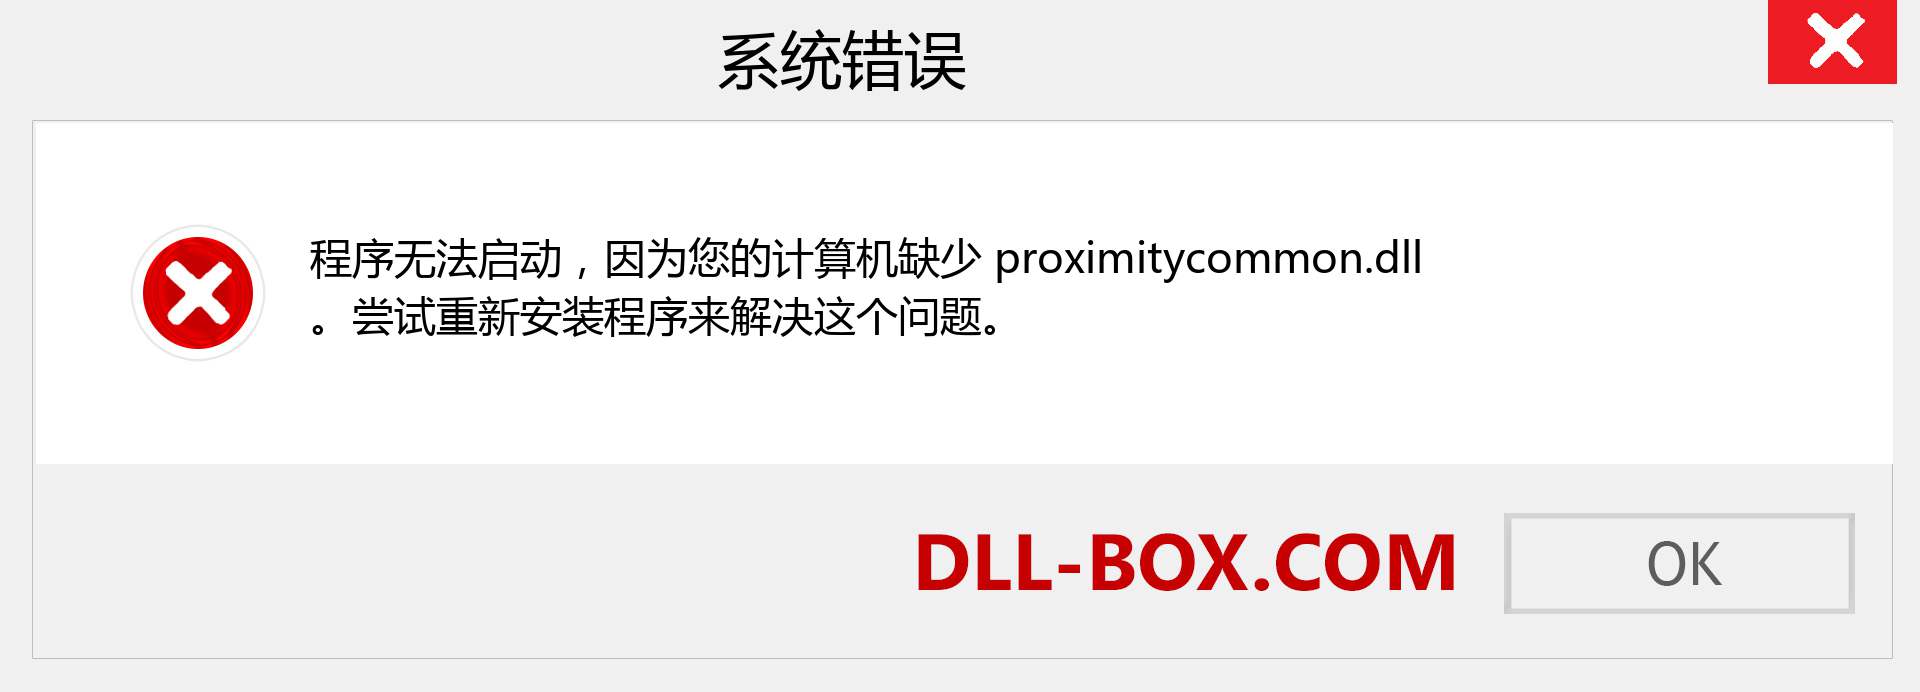 proximitycommon.dll 文件丢失？。 适用于 Windows 7、8、10 的下载 - 修复 Windows、照片、图像上的 proximitycommon dll 丢失错误